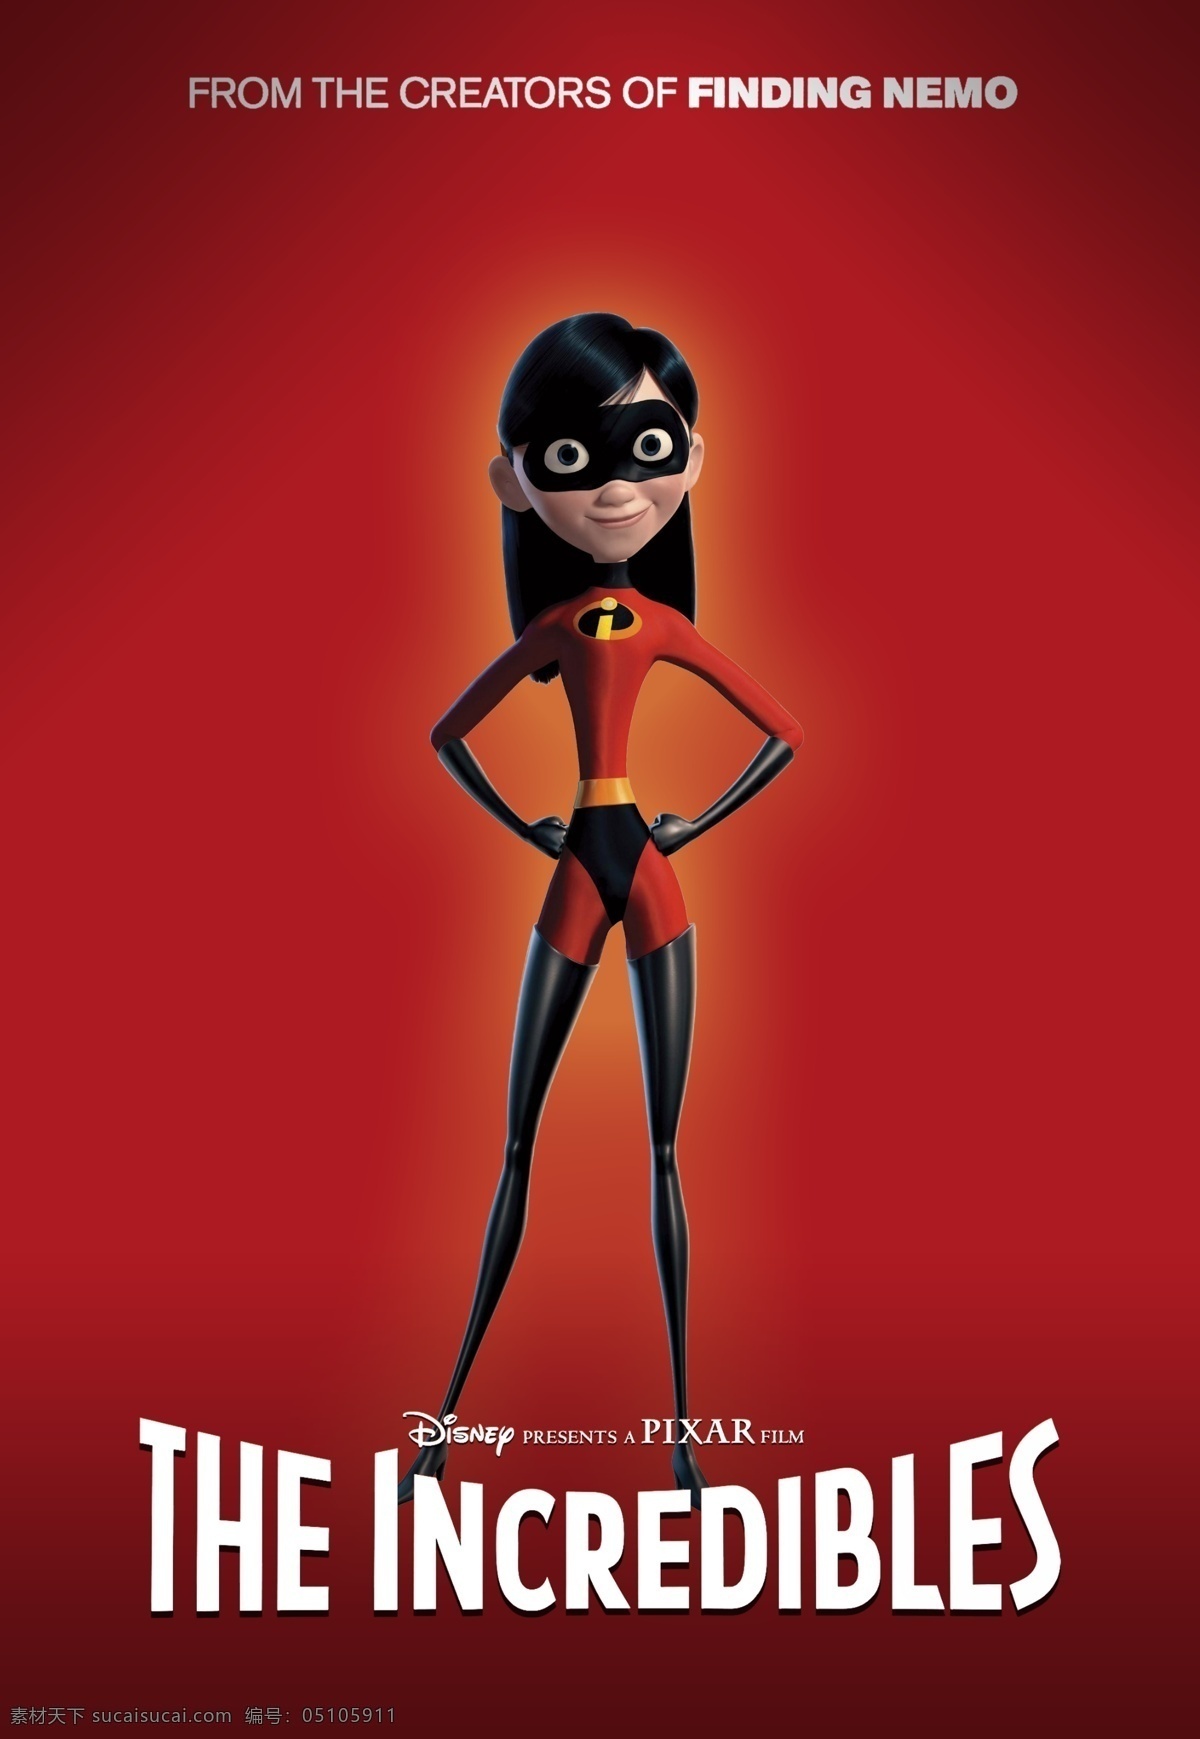 超人总动员 超人特攻队 超人特工 超人家族 动画 皮克斯 电影 电影海报 海报 pixar 动漫动画